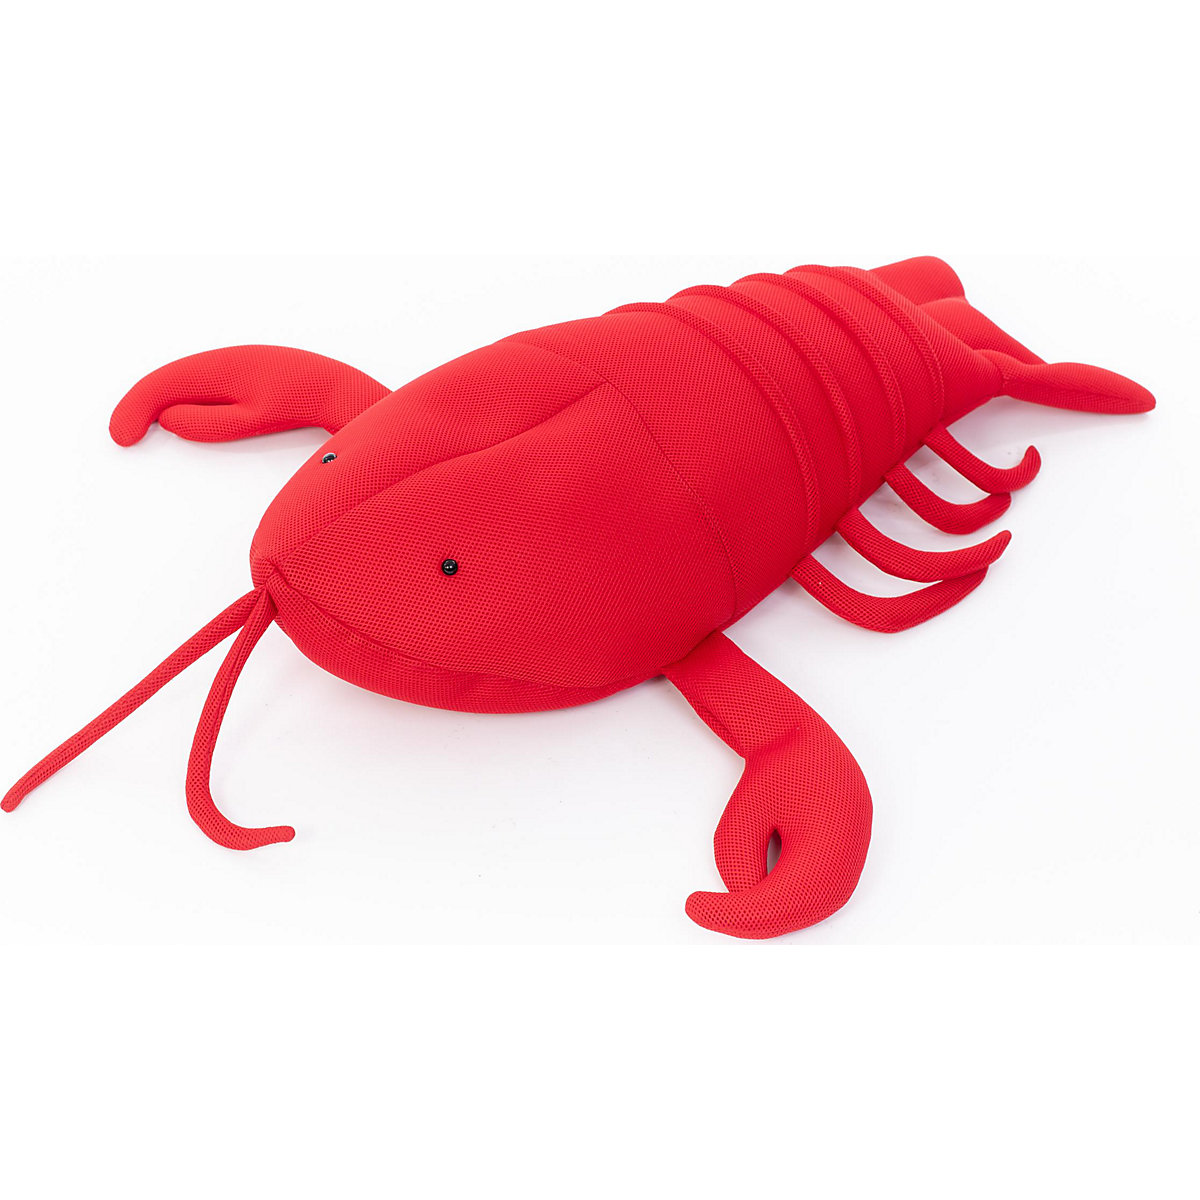 WESTMANN Pool Buddy Lobster